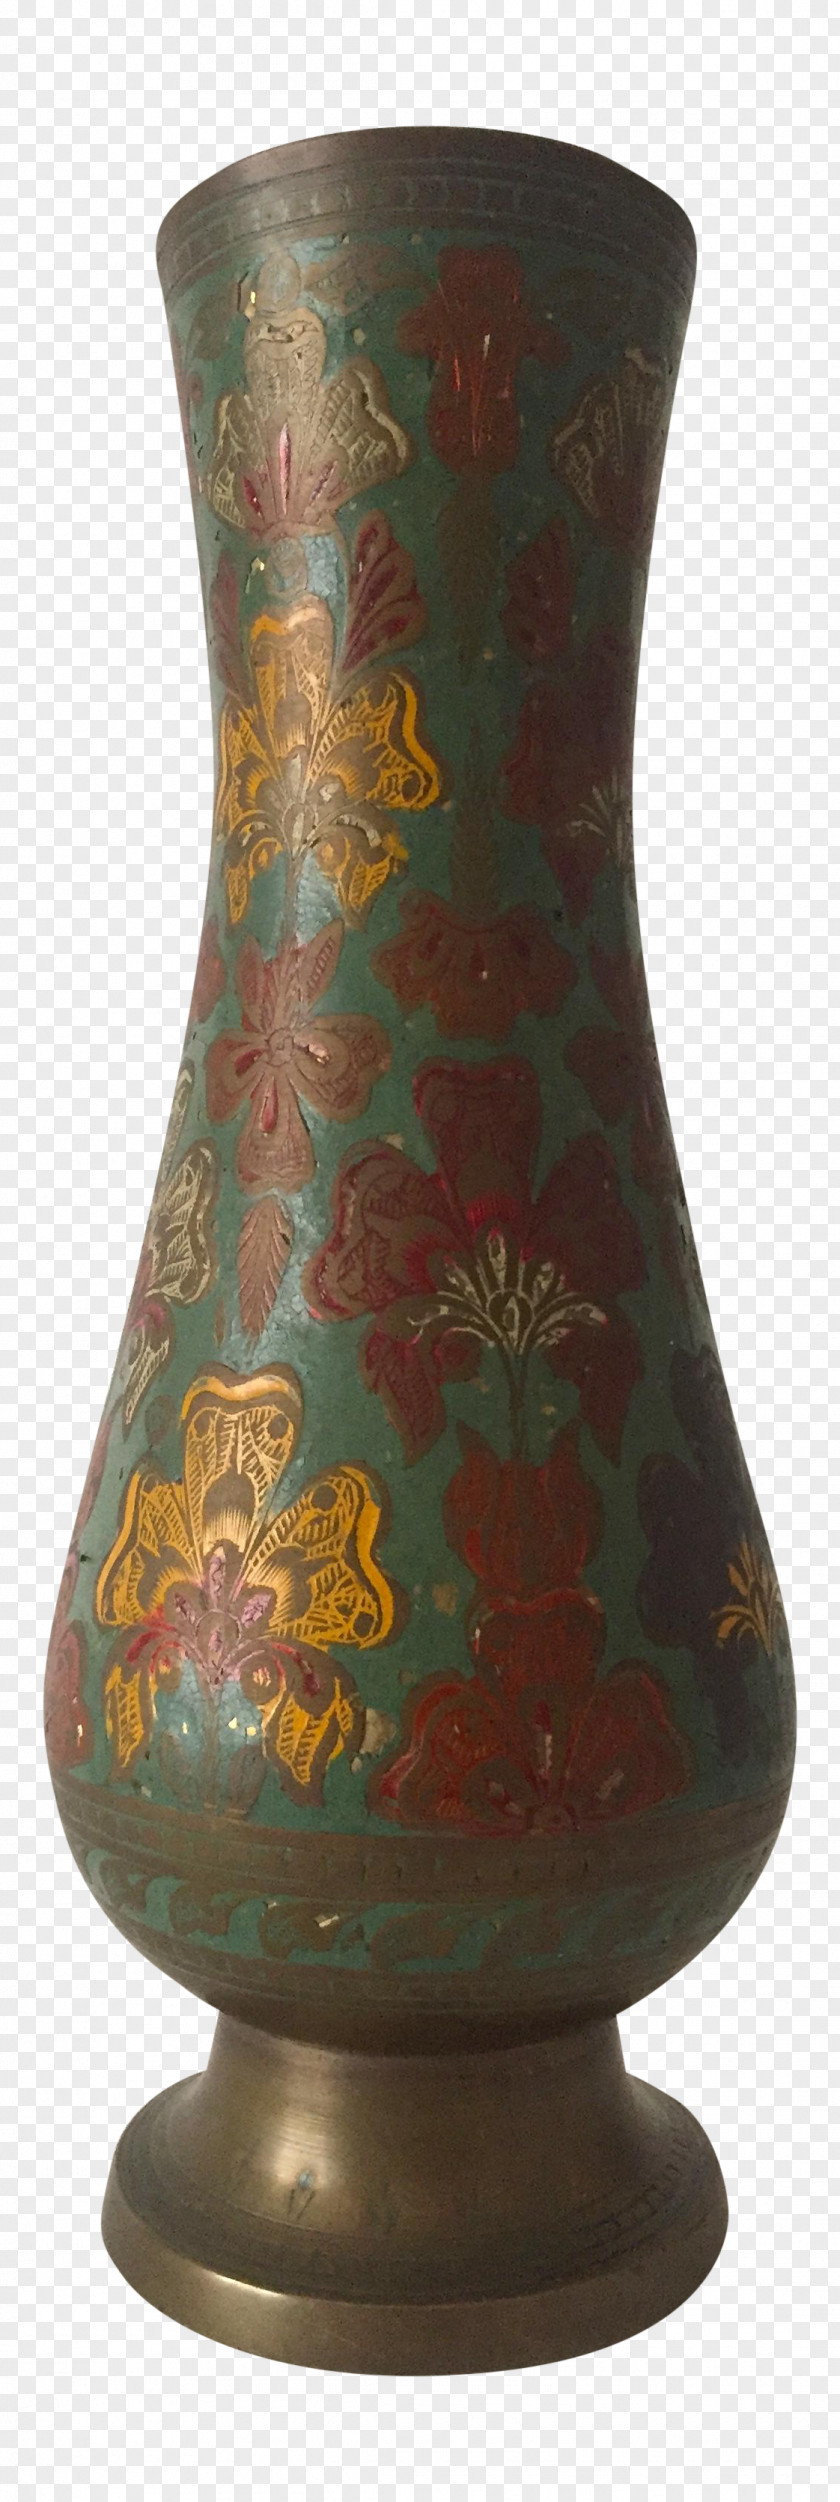 Vase Ceramic Artifact Pottery Urn PNG